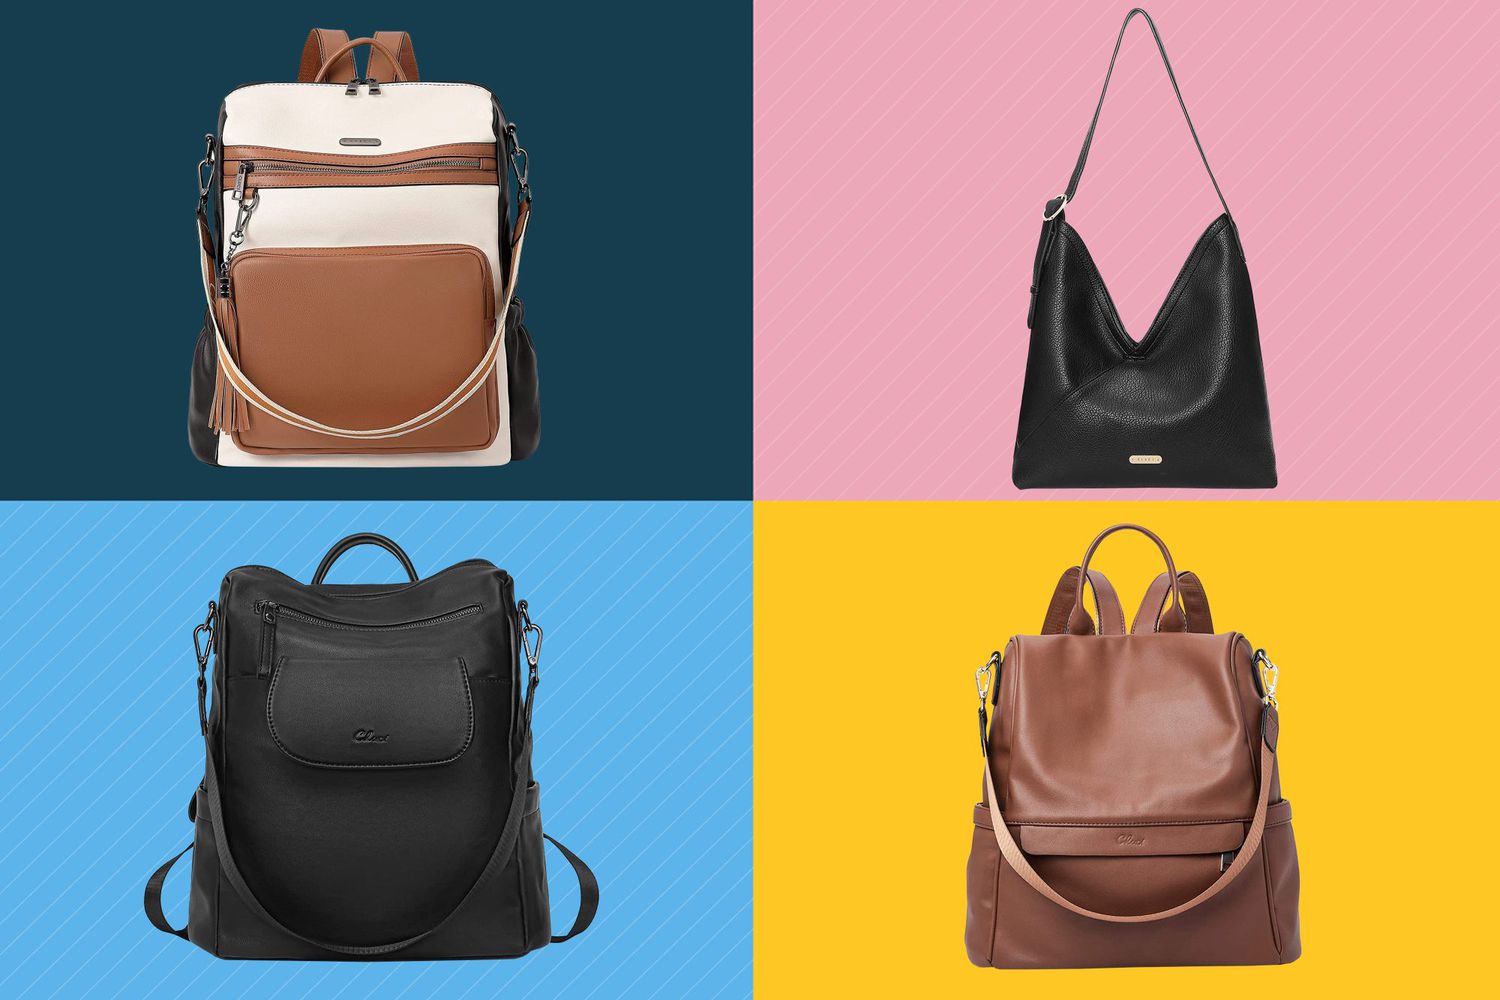 Estas bolsas de mochila conversíveis 'luxuosas e versáteis' estão com até 40% de desconto na Amazon agora mesmo